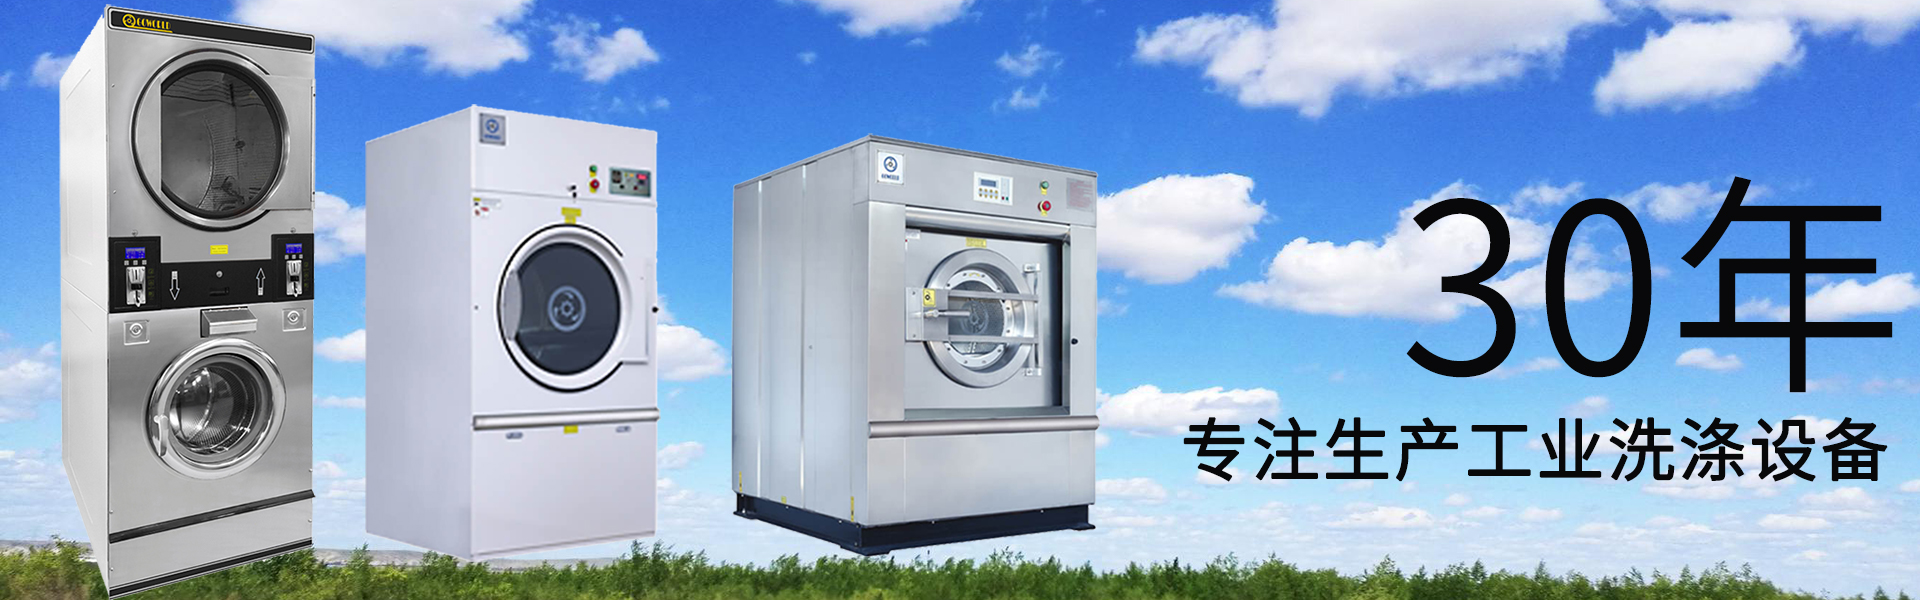 ballbet:洗衣机十大品牌排行榜 洗衣机有哪些品牌